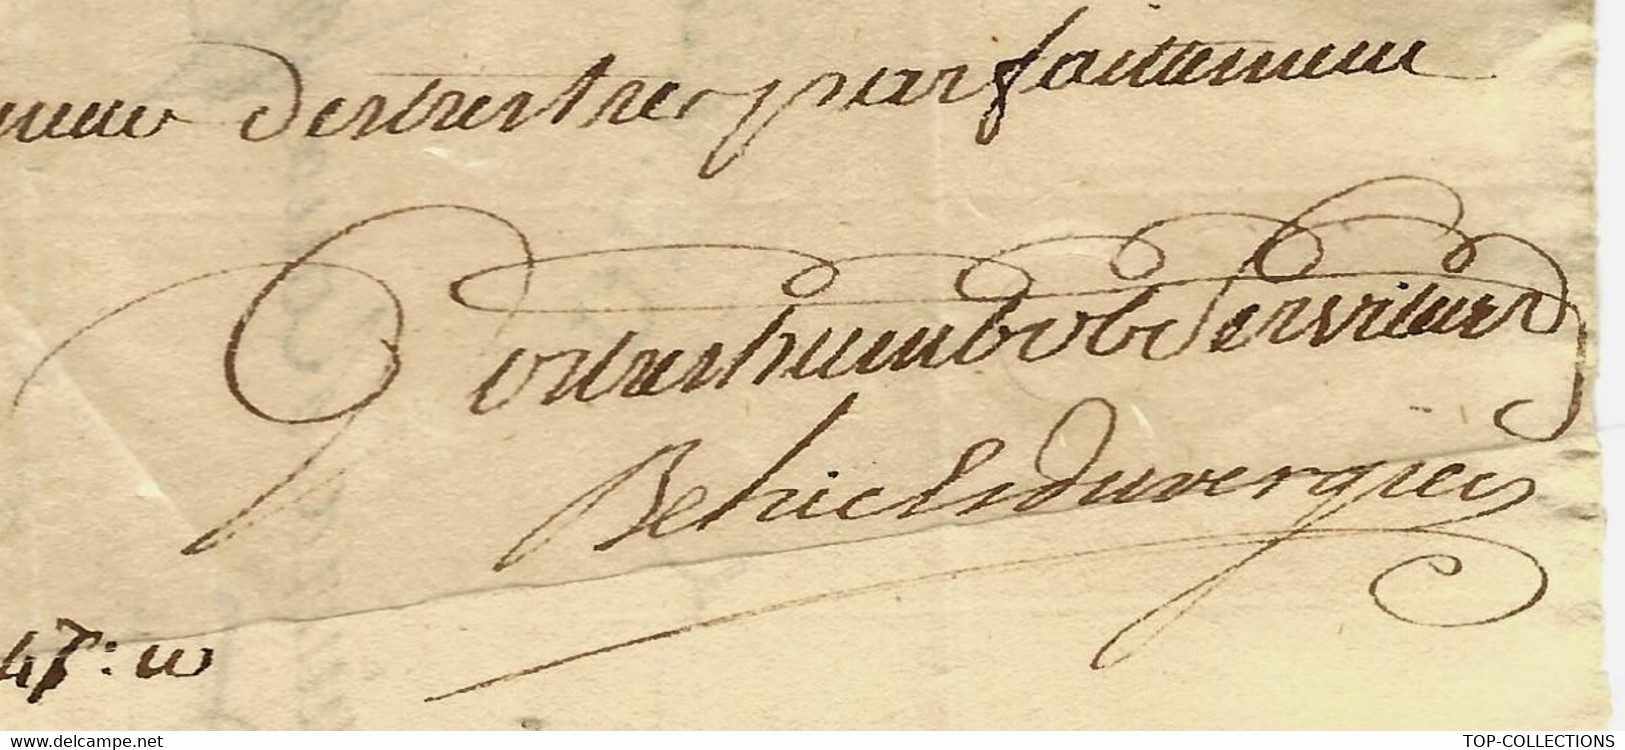 1763 NEGOCE COMMERCE Lettre Sign. Behic & Duvergier Négociant Rouen Pour Roux Frères Négociants Marseille - ... - 1799